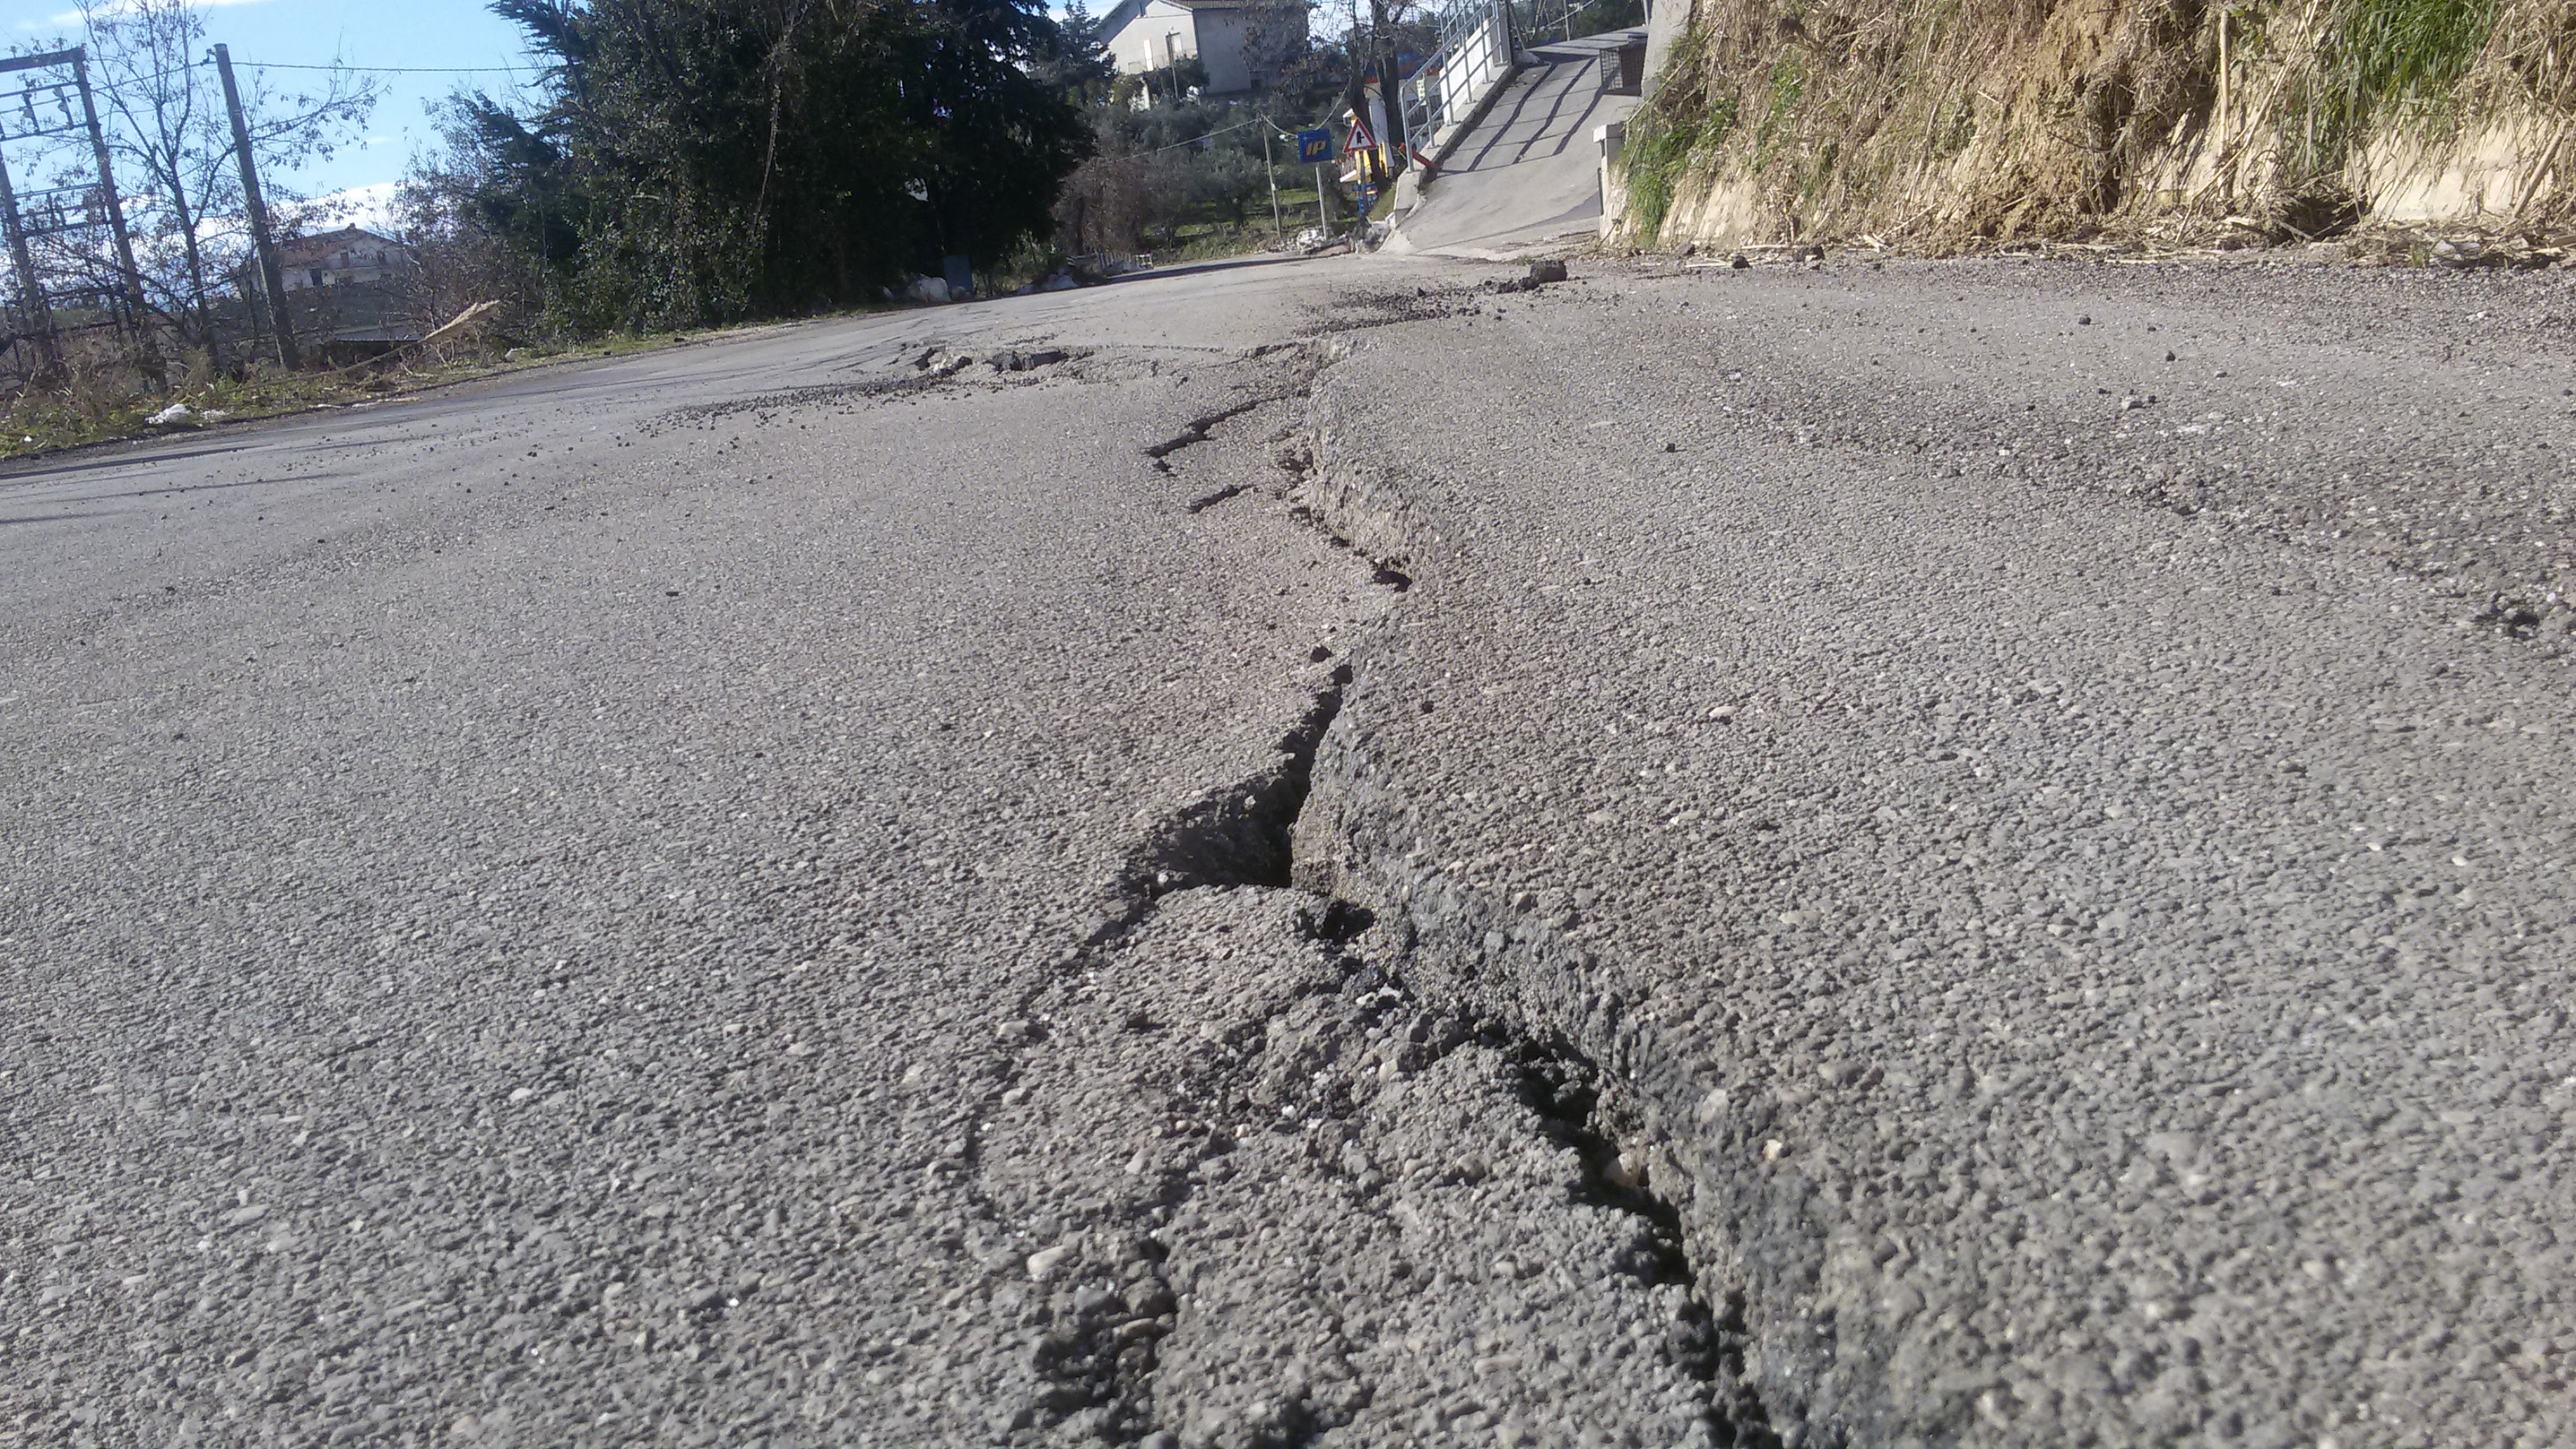 Strada Provincia rotta dopo due anni dai lavori di rifacimento – nuove frane a Colle S. Antonio